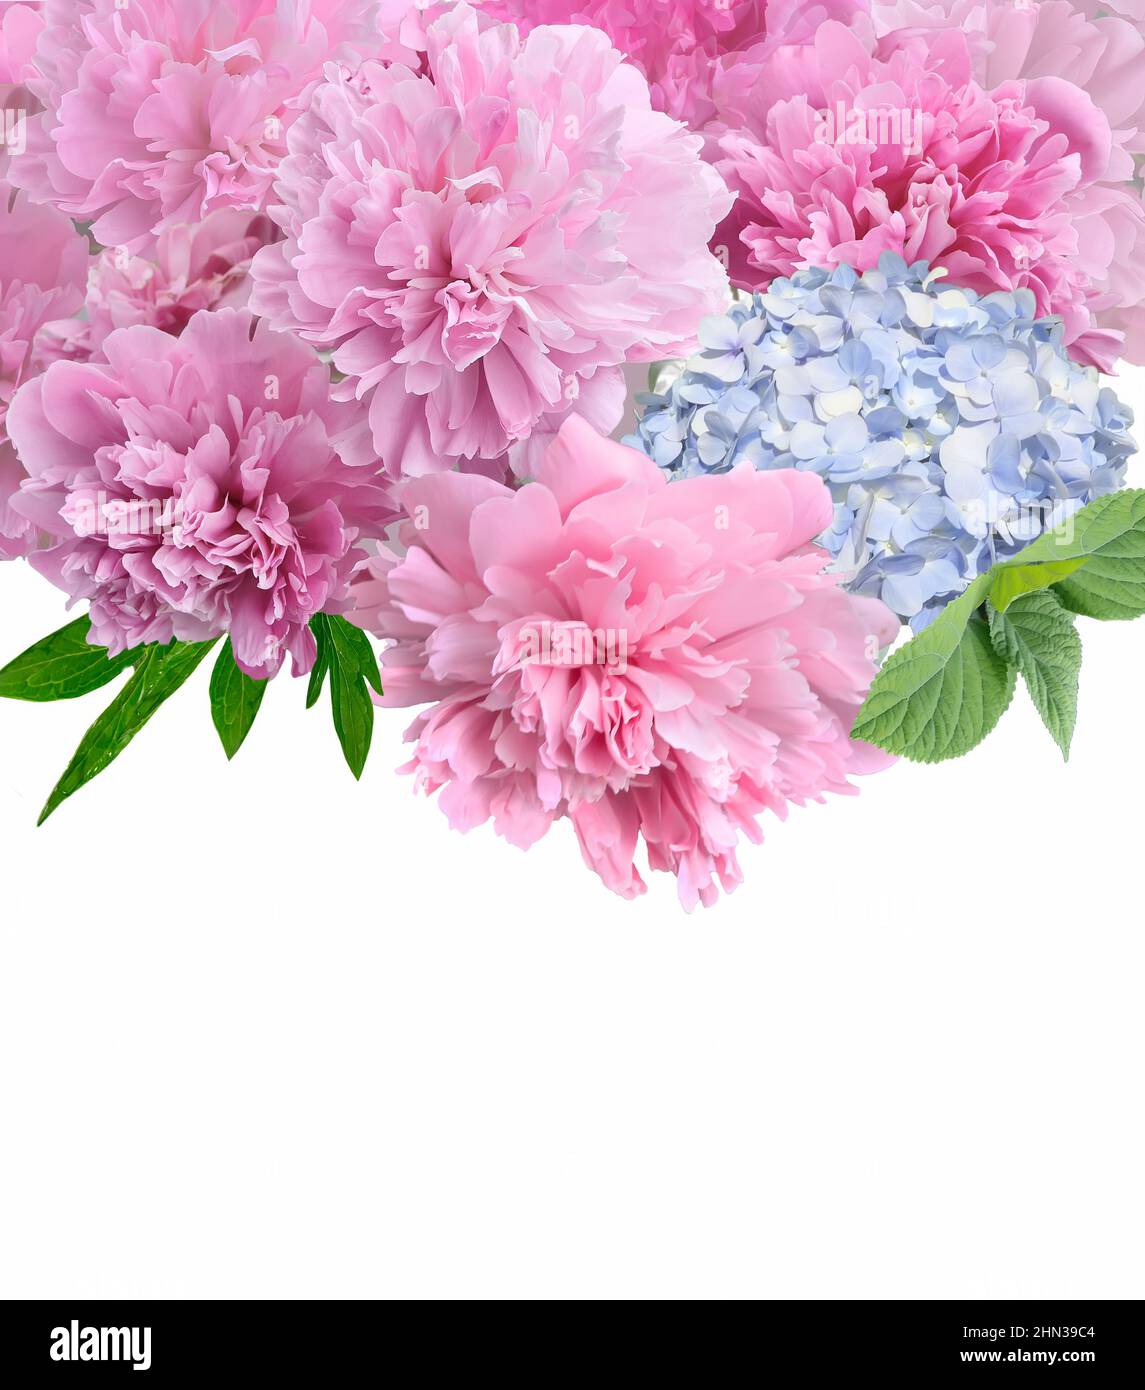 Schöne Blumenborder mit rosa Pfingstrosen und blauen Hortensien-Blüten schließen sich auf weißem Hintergrund mit Platz für Text, Holiday-Konzept. Blumen Stockfoto